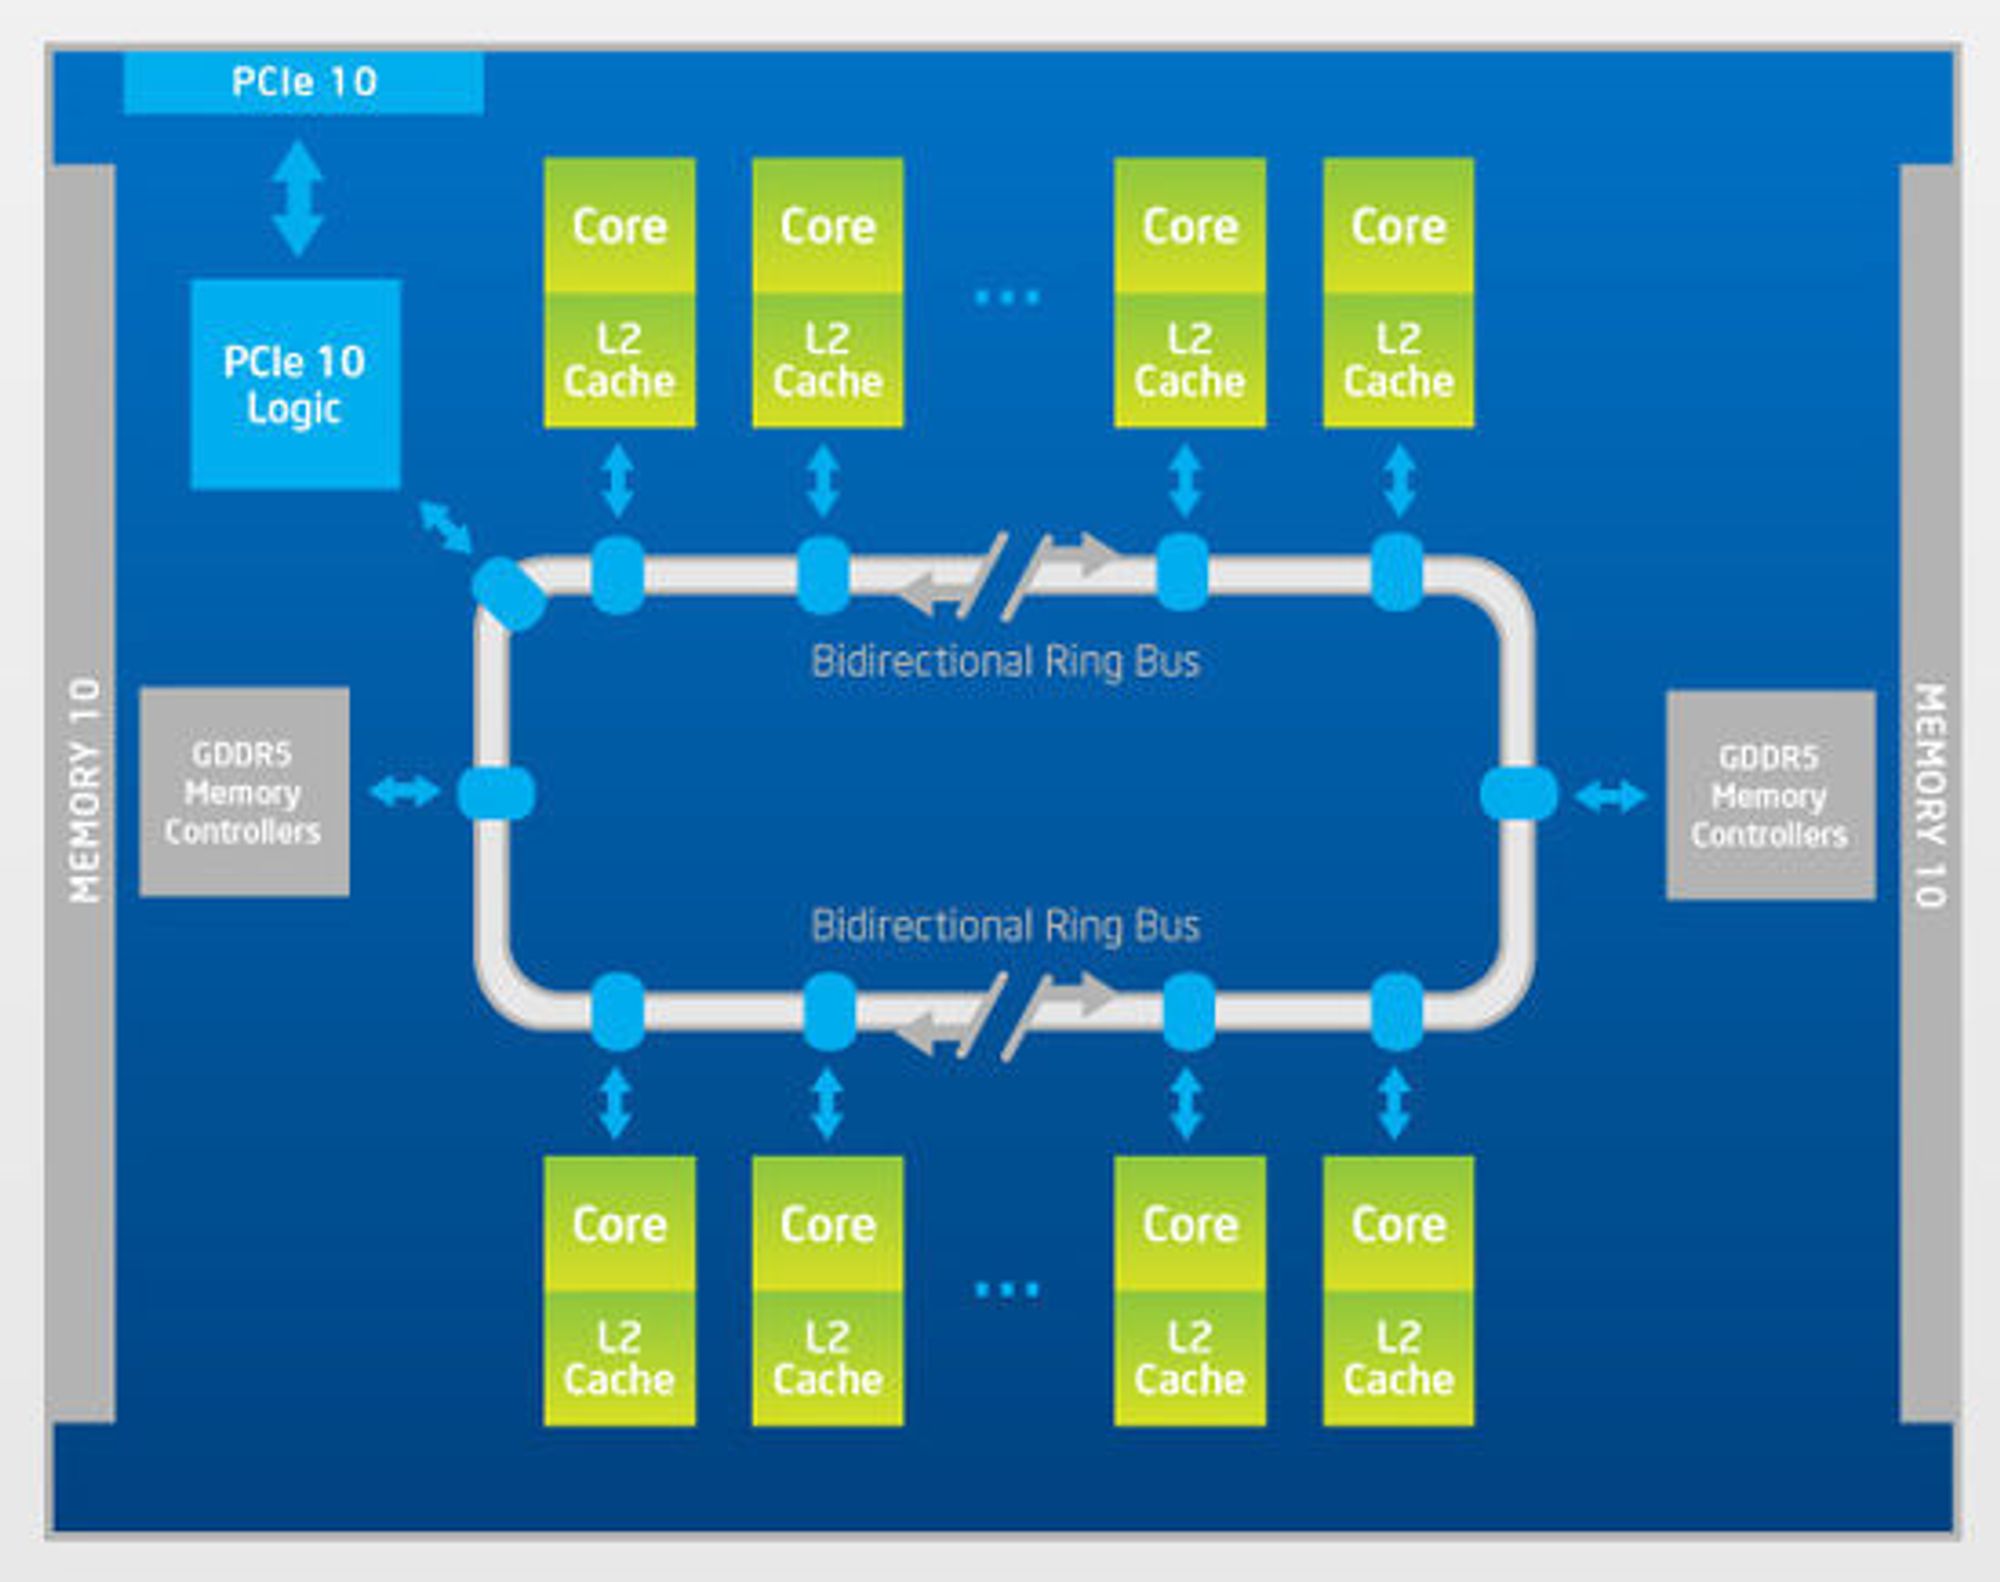 Blokkdiagram over Intel Xeon Phi.